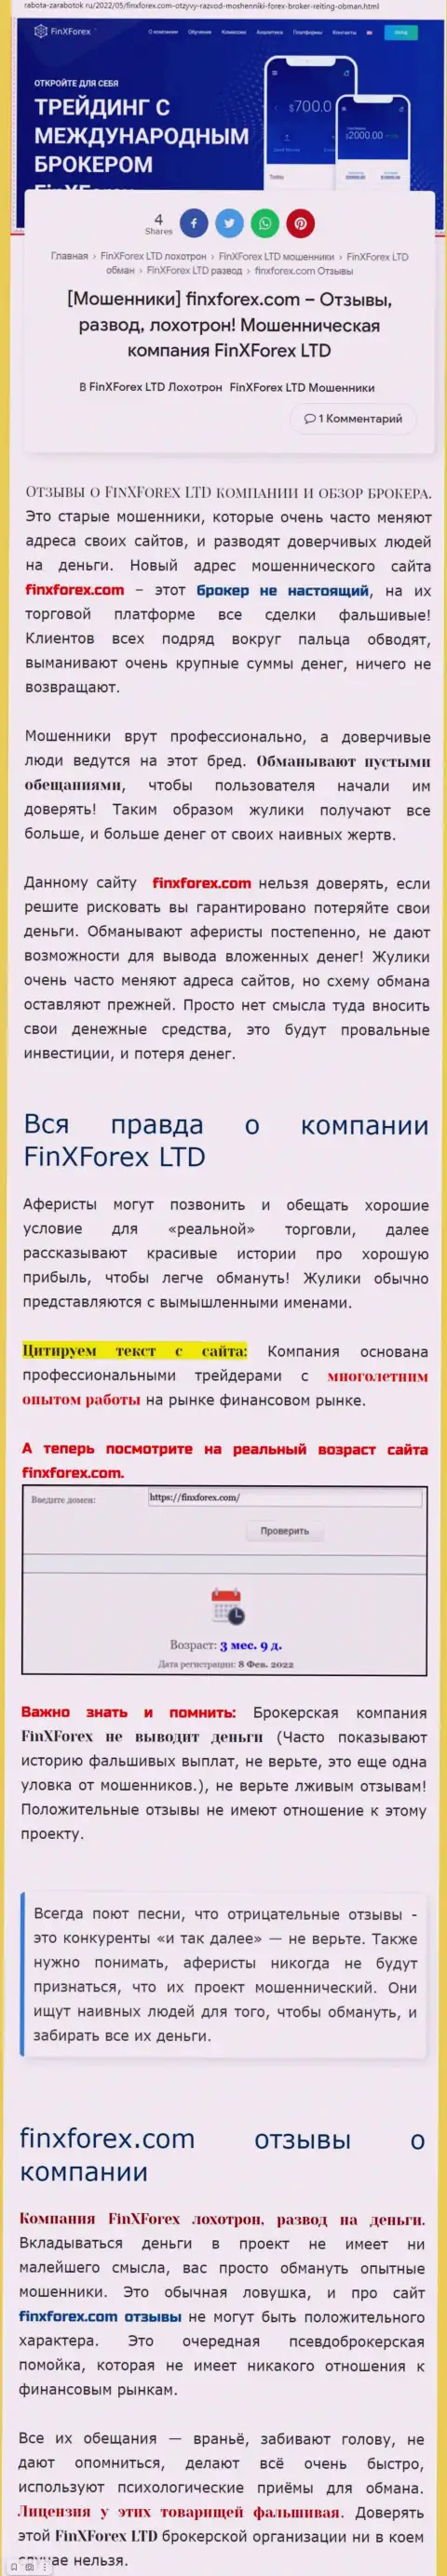 Автор обзора о FinX Forex говорит, что в конторе FinX Forex дурачат